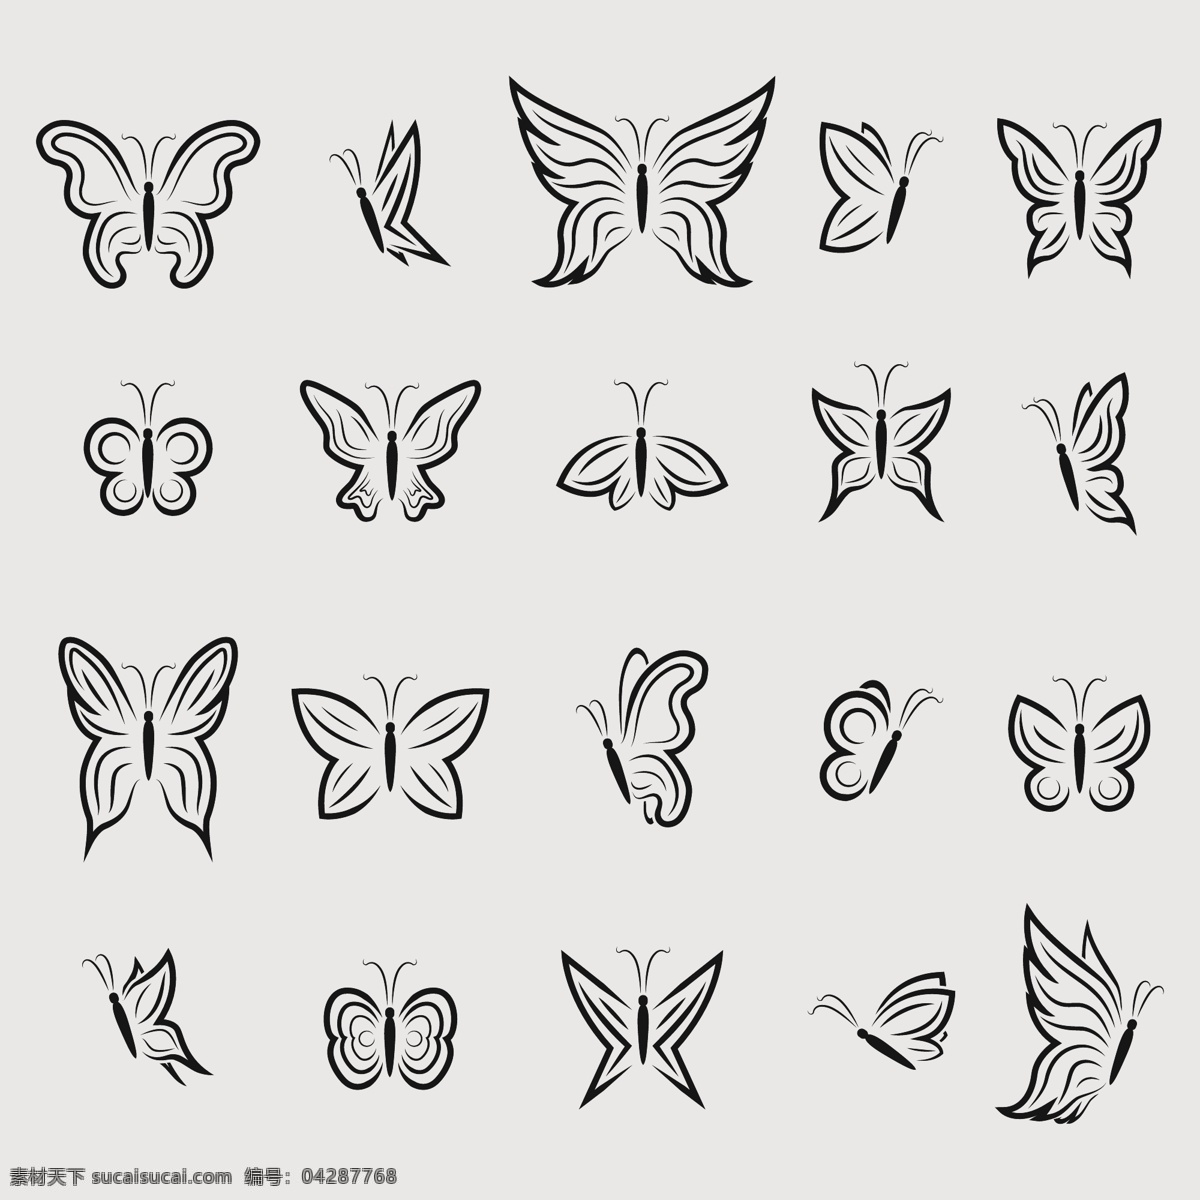 组 手绘 简约 蝴蝶 可爱 卡通 卡哇伊 矢量素材 动物 小动物 创意设计 创意 元素 生物元素 动物元素